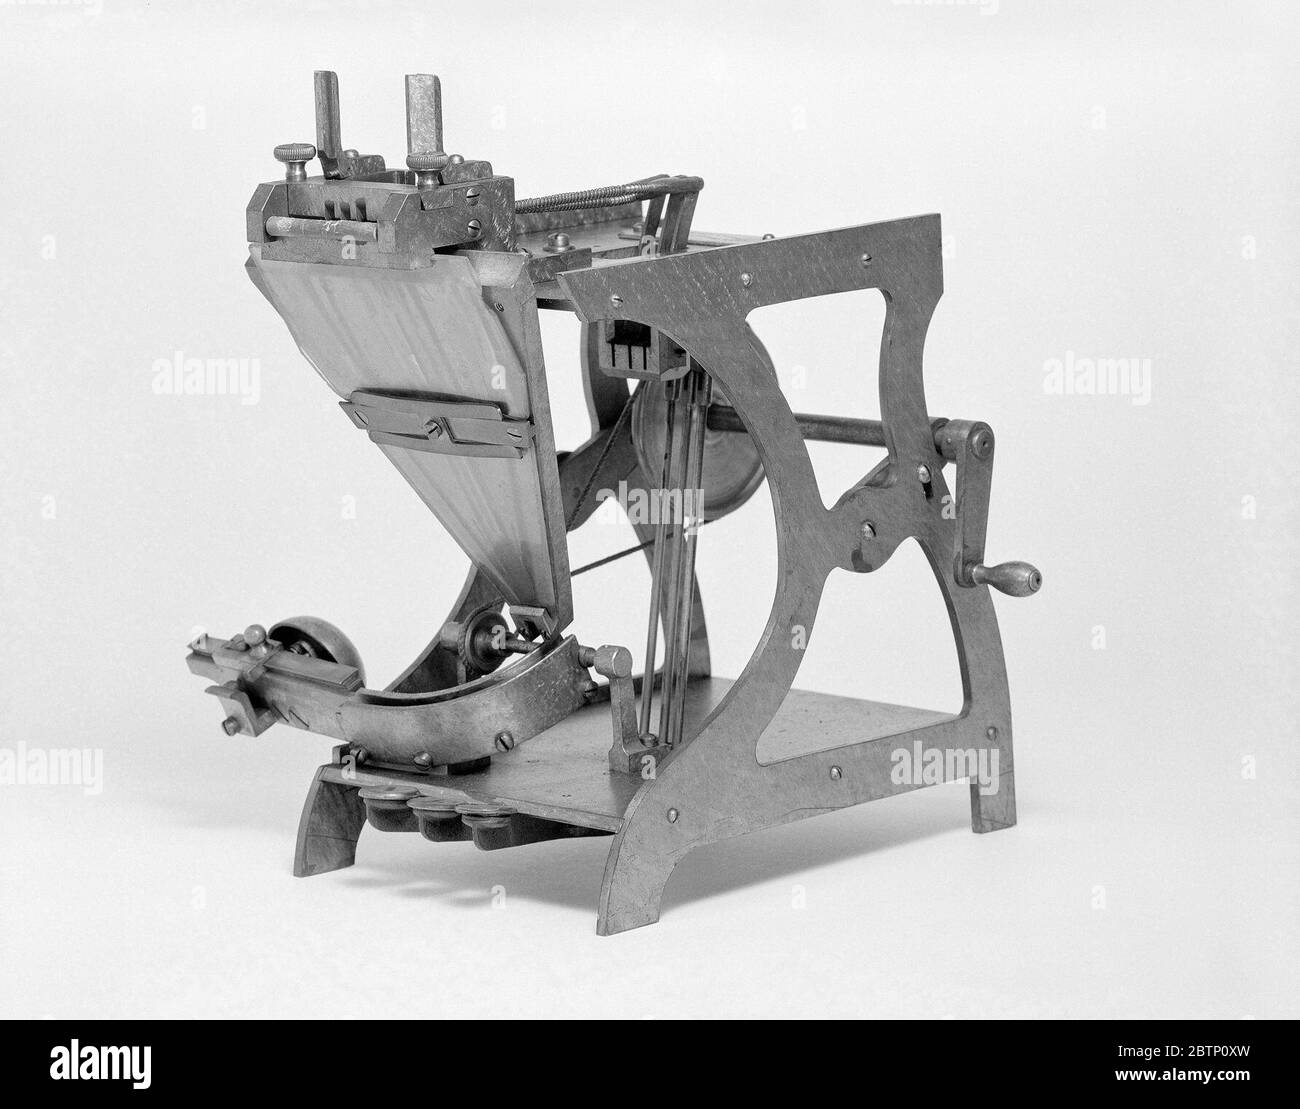 Modello di brevetto di aTypesetting Machine. Questo modello di brevetto dimostra un'invenzione per una macchina per la composizione tipografica che è stata concessa con il numero di brevetto 174916. Foto Stock